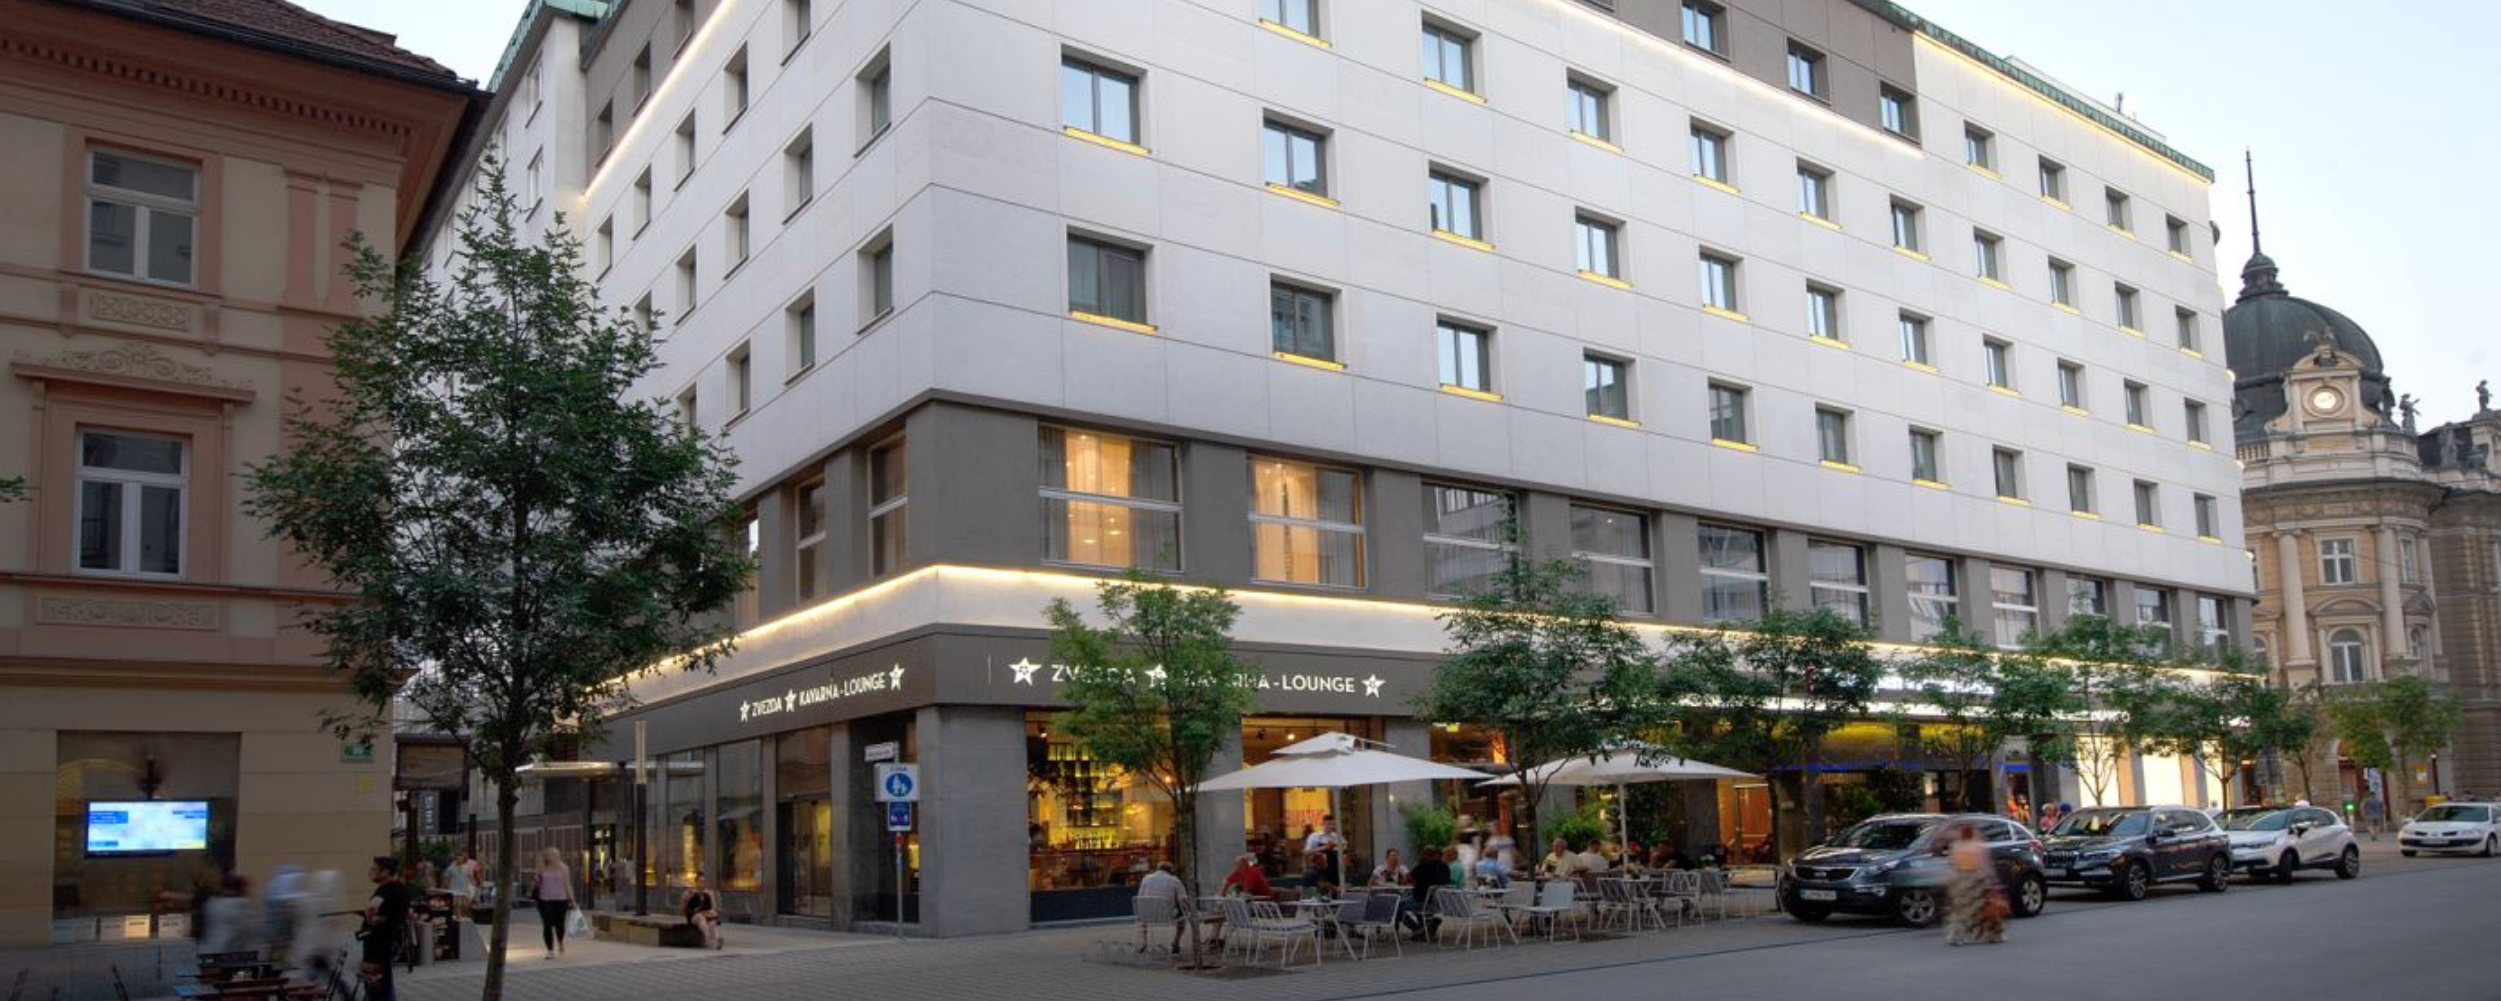 Best Western Premier Hotel Slon Ljubljana